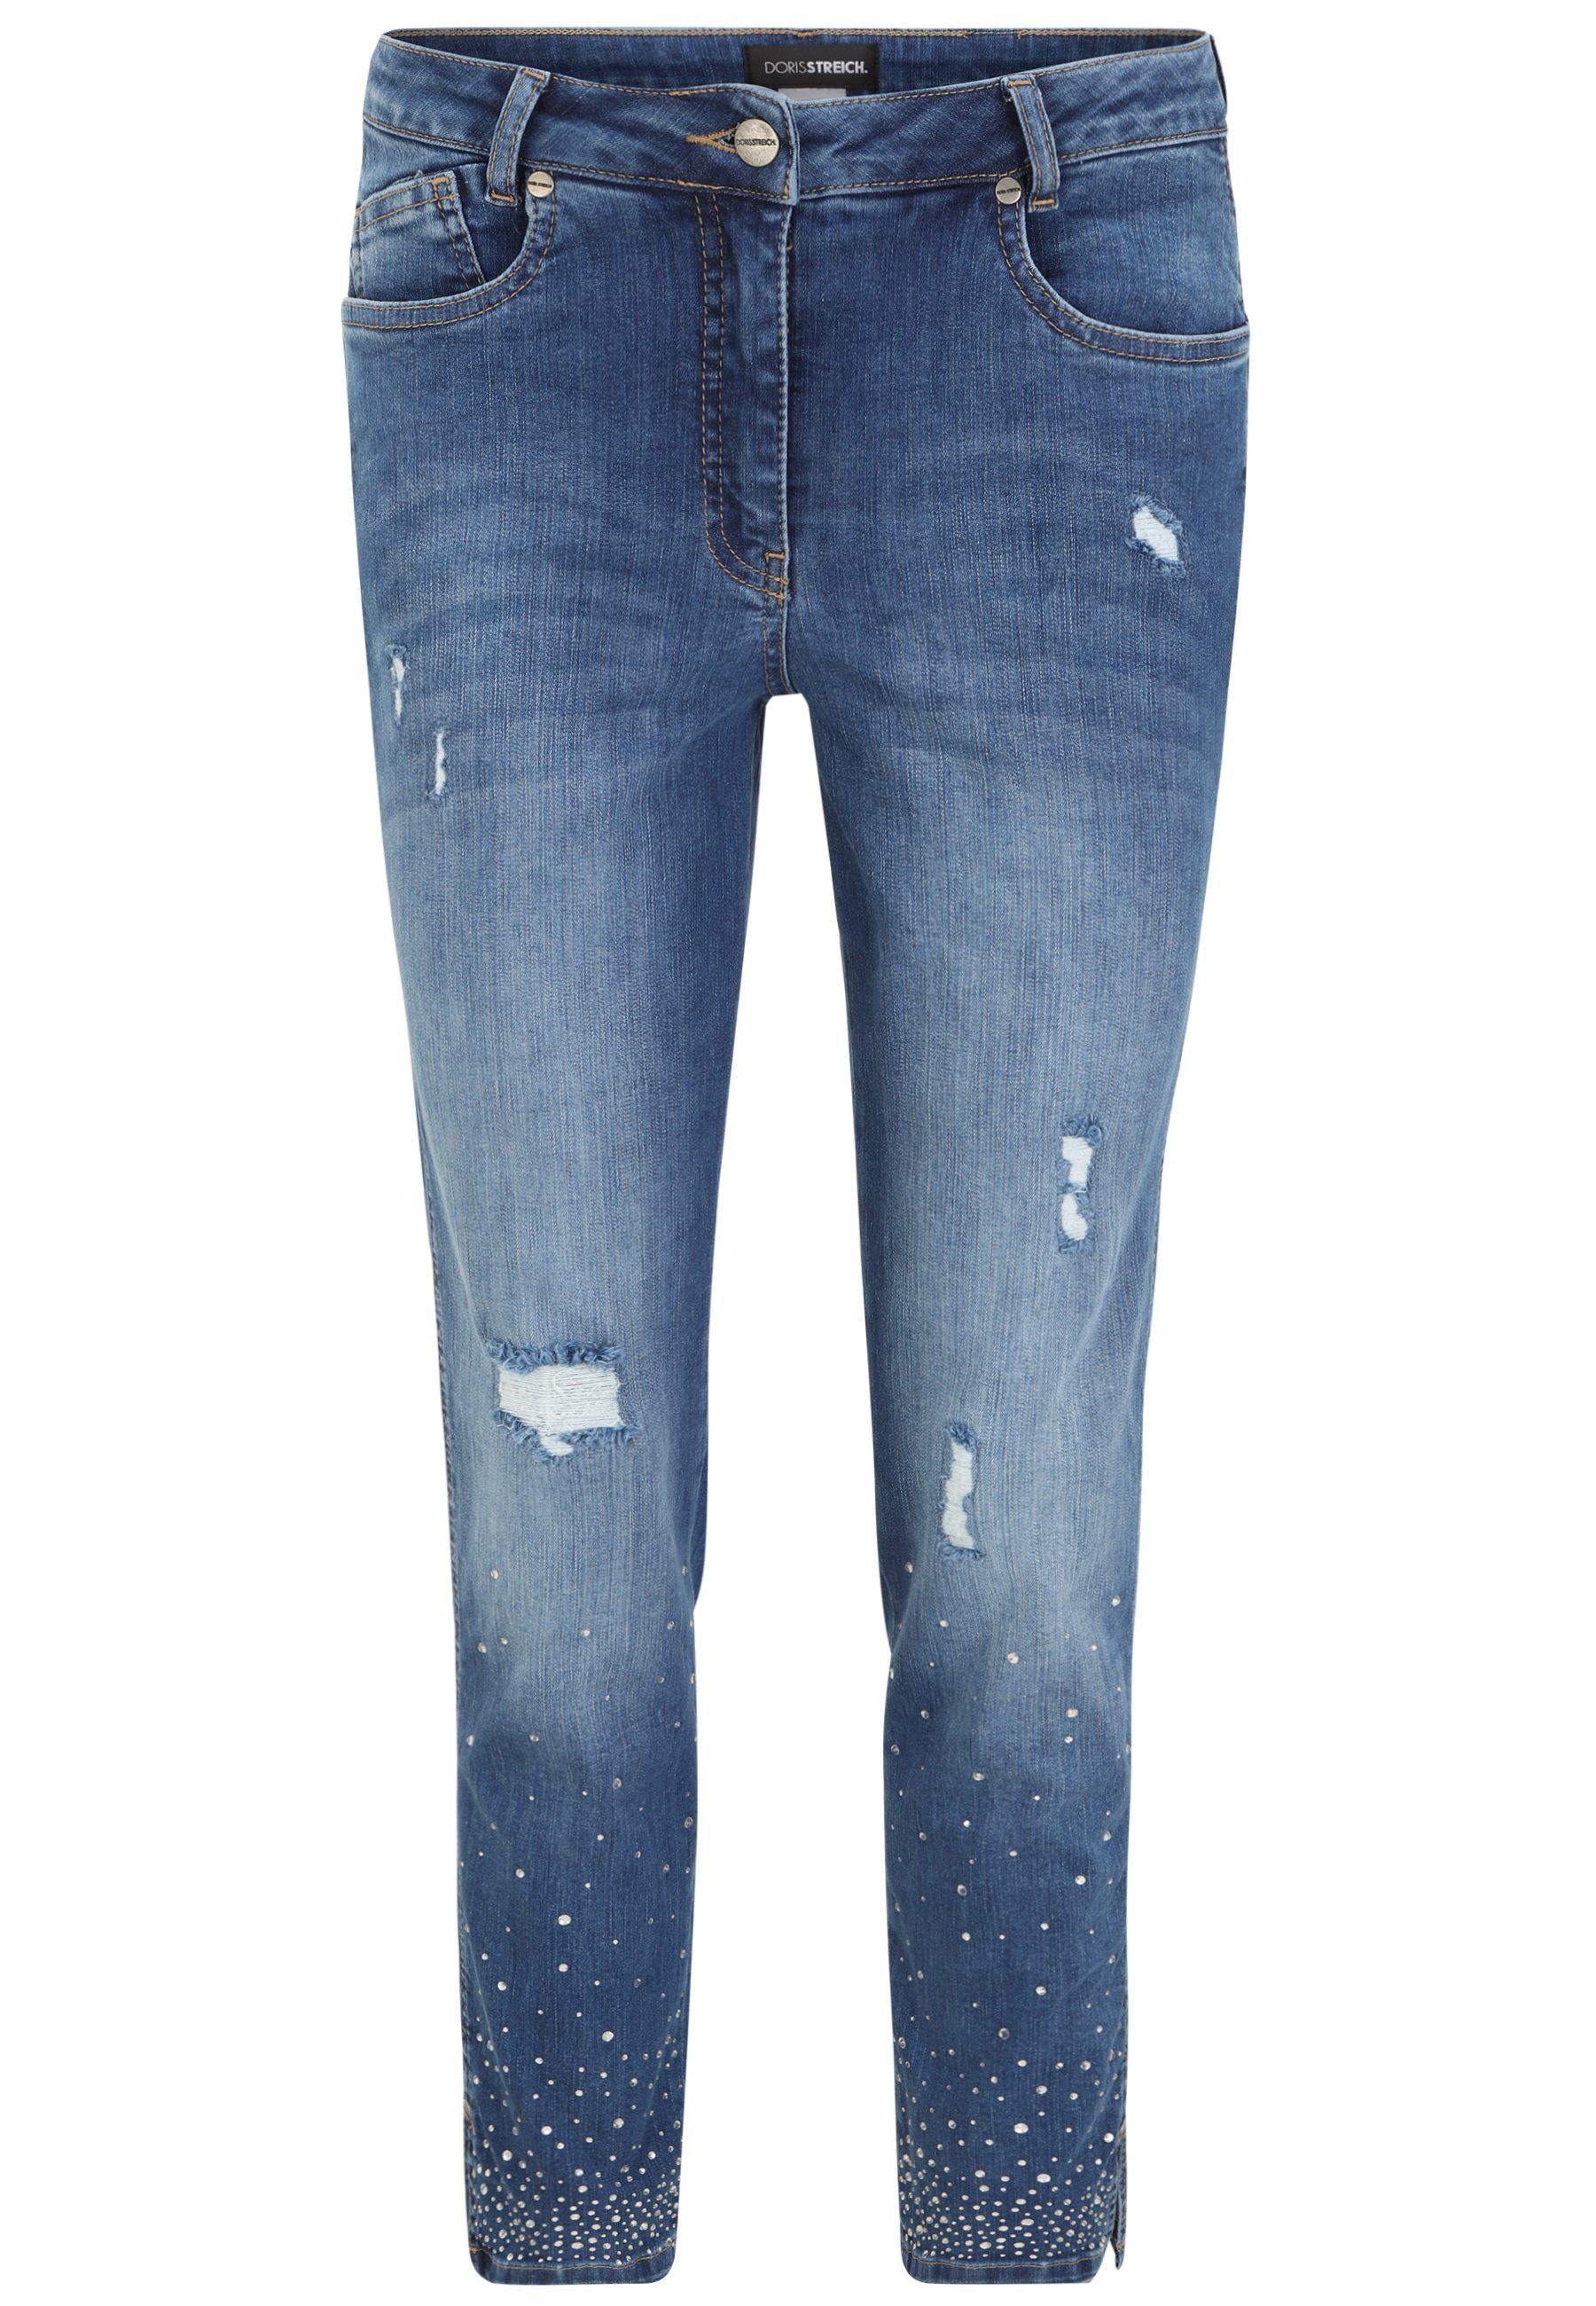 Doris Streich Jeans für Damen online kaufen | OTTO